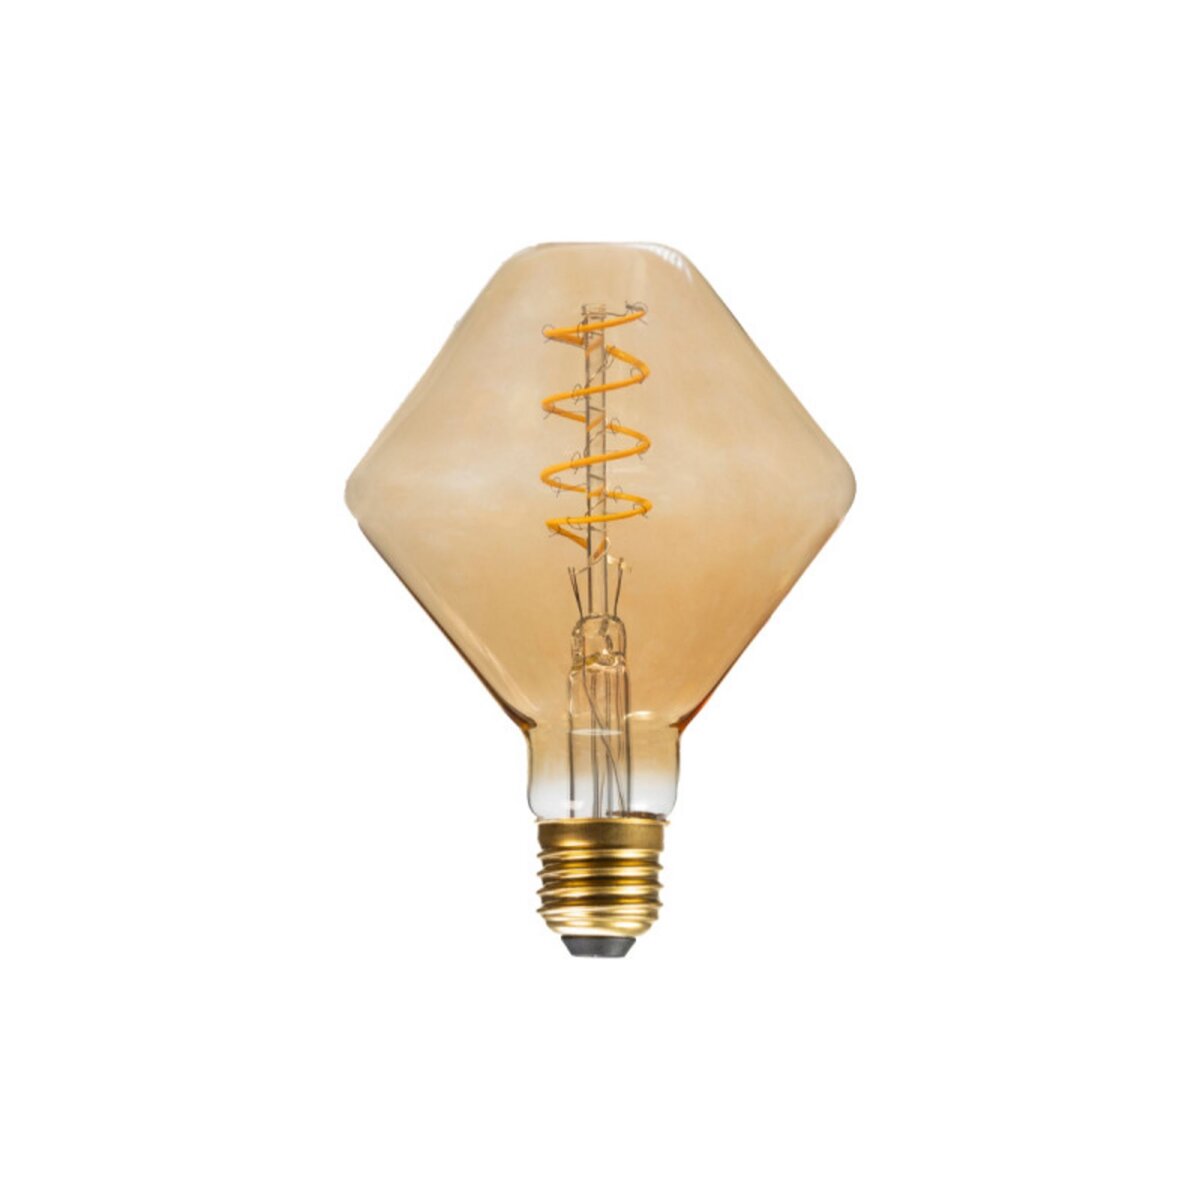  Ampoule LED incurvée XXCELL - 5 W - 260 lumens - 2100 K - E27